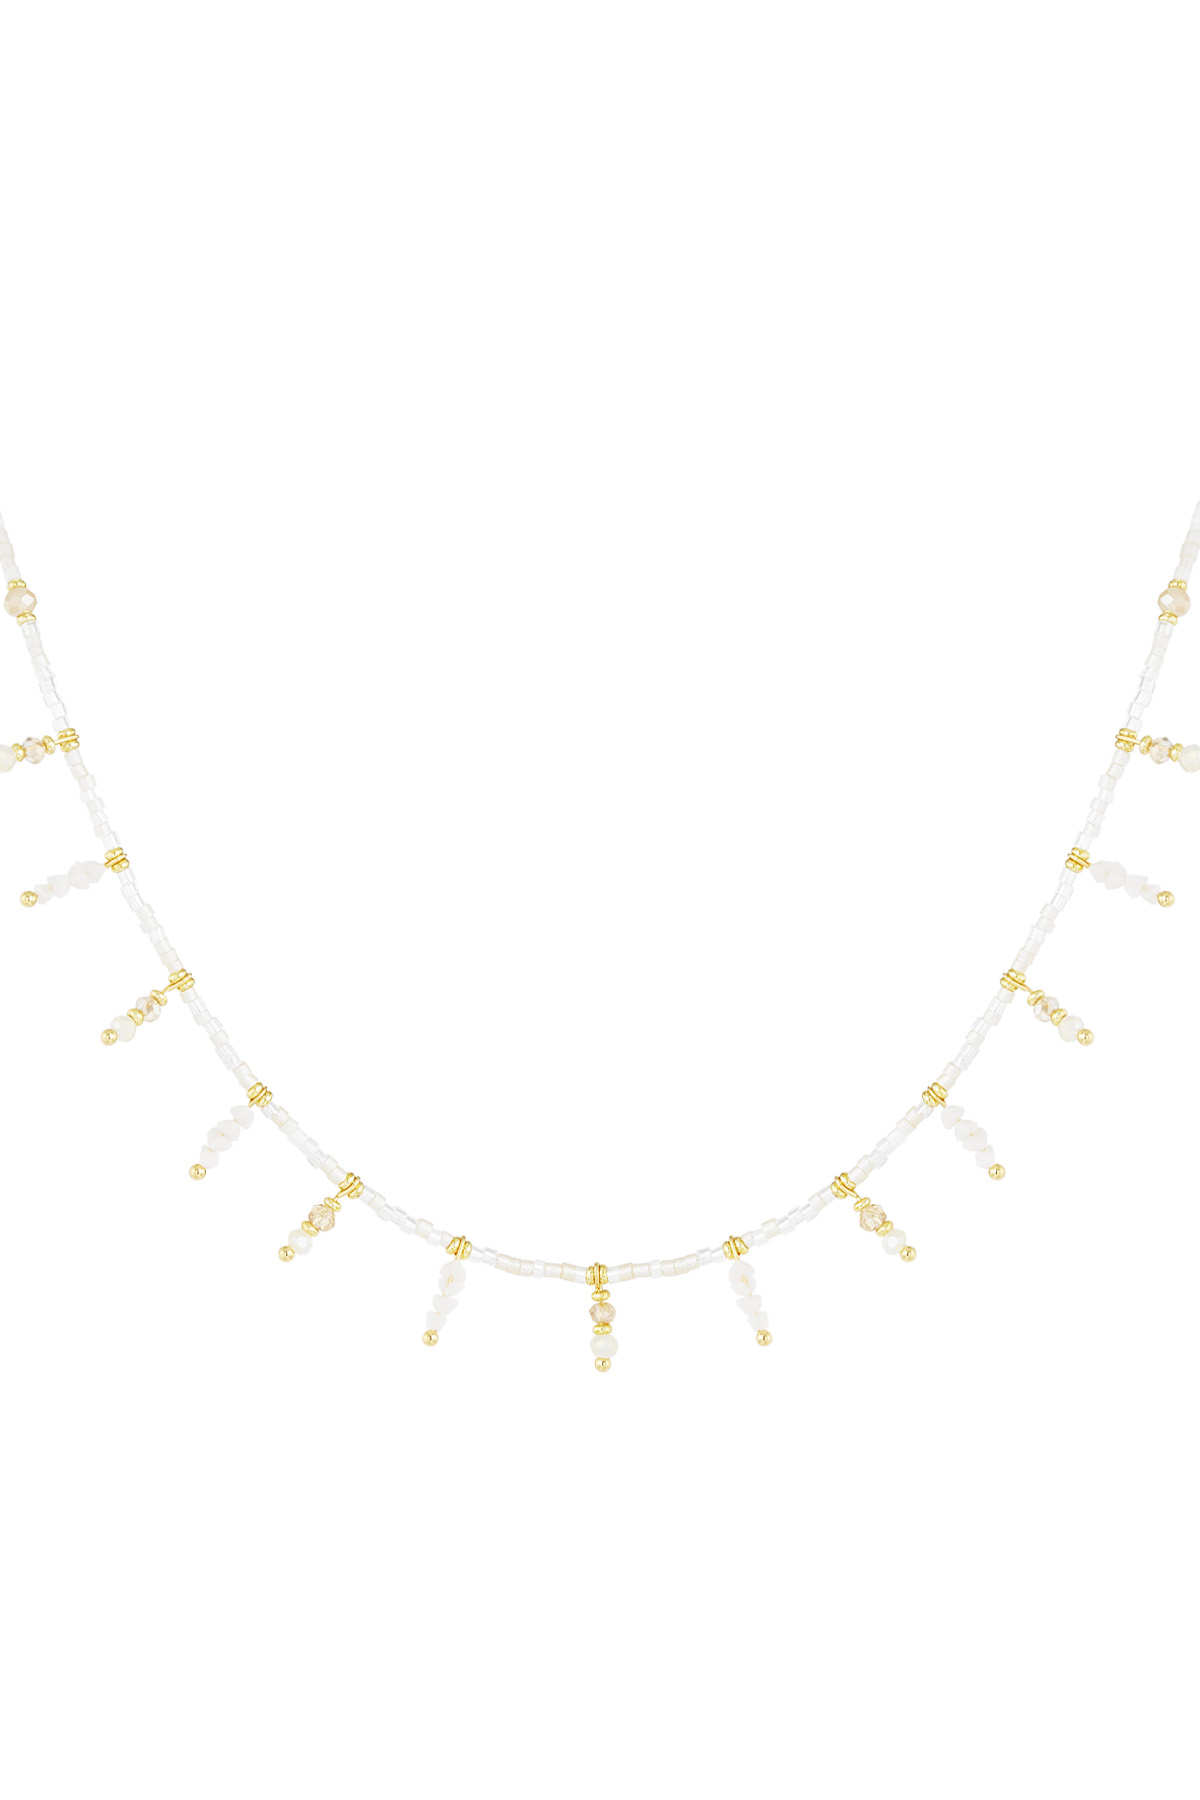 Halskette Summer Sparkle - gebrochenes Weiß h5 